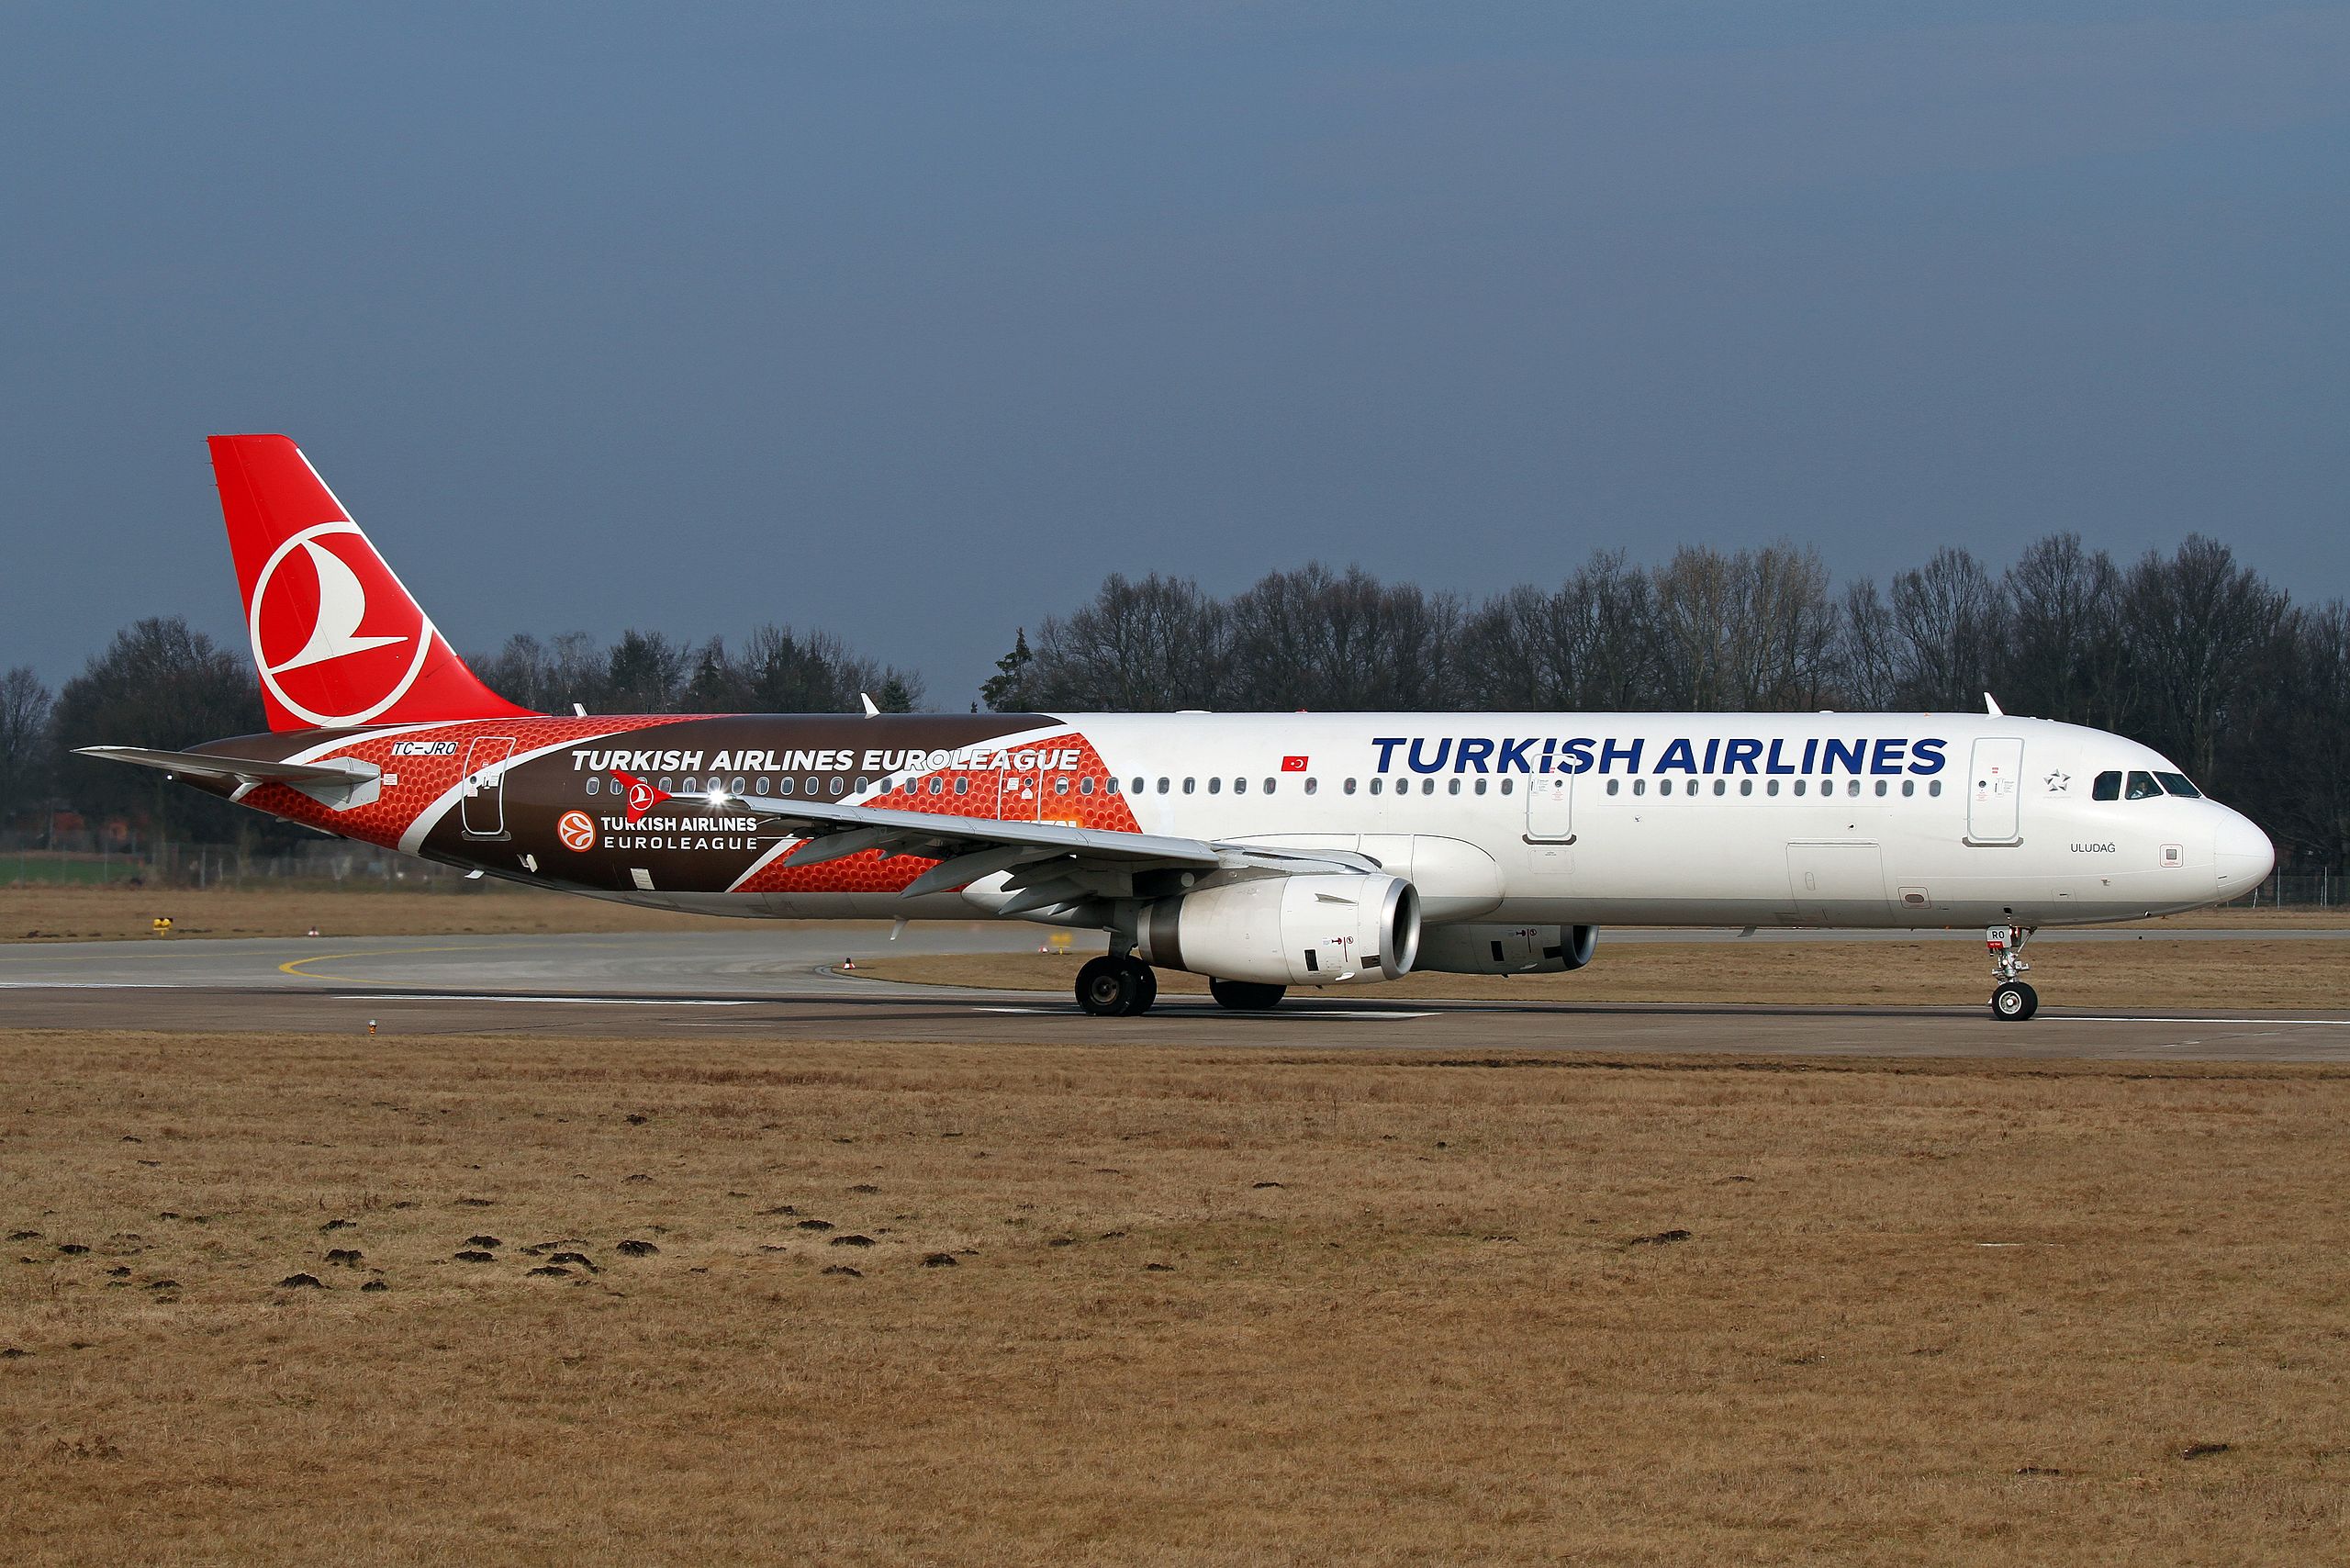 L'image représente un avion Turkish airlines.